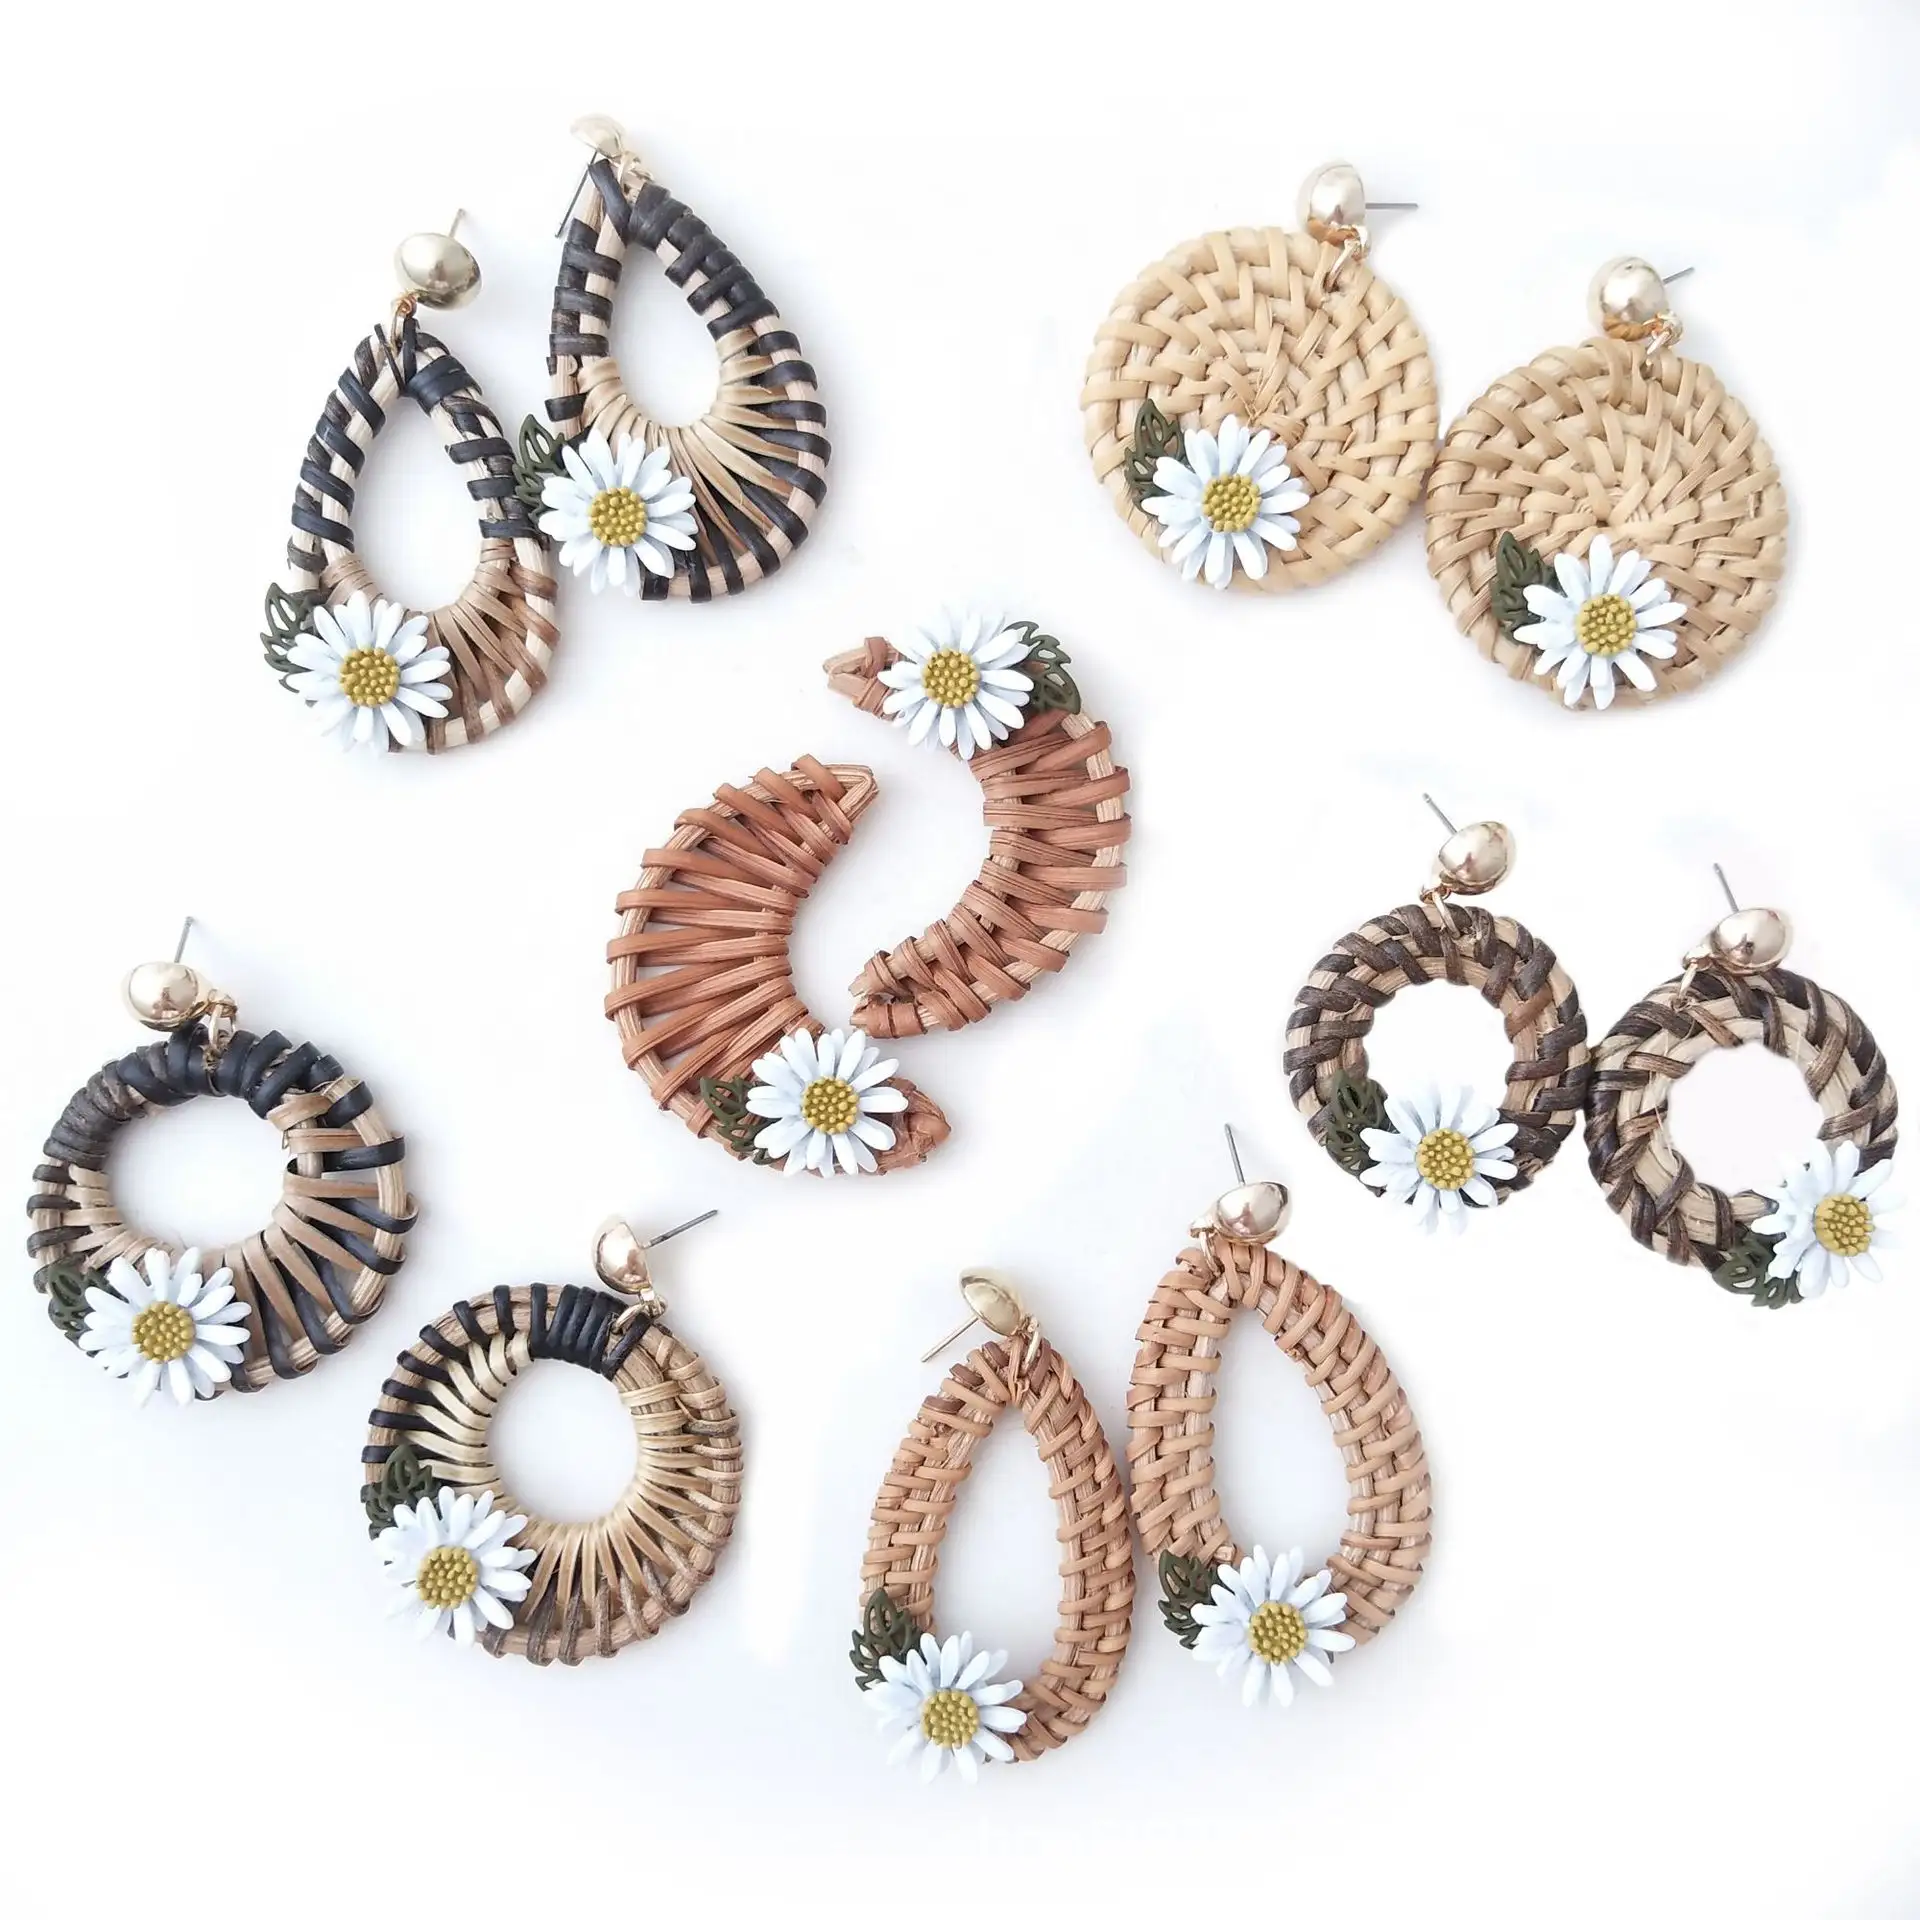 Full Handmade Rattan Earrings Geometric Small Daisy Woven Bohemian Earrings Straw Wicker Braid Hoop Drop Dangle Earrings